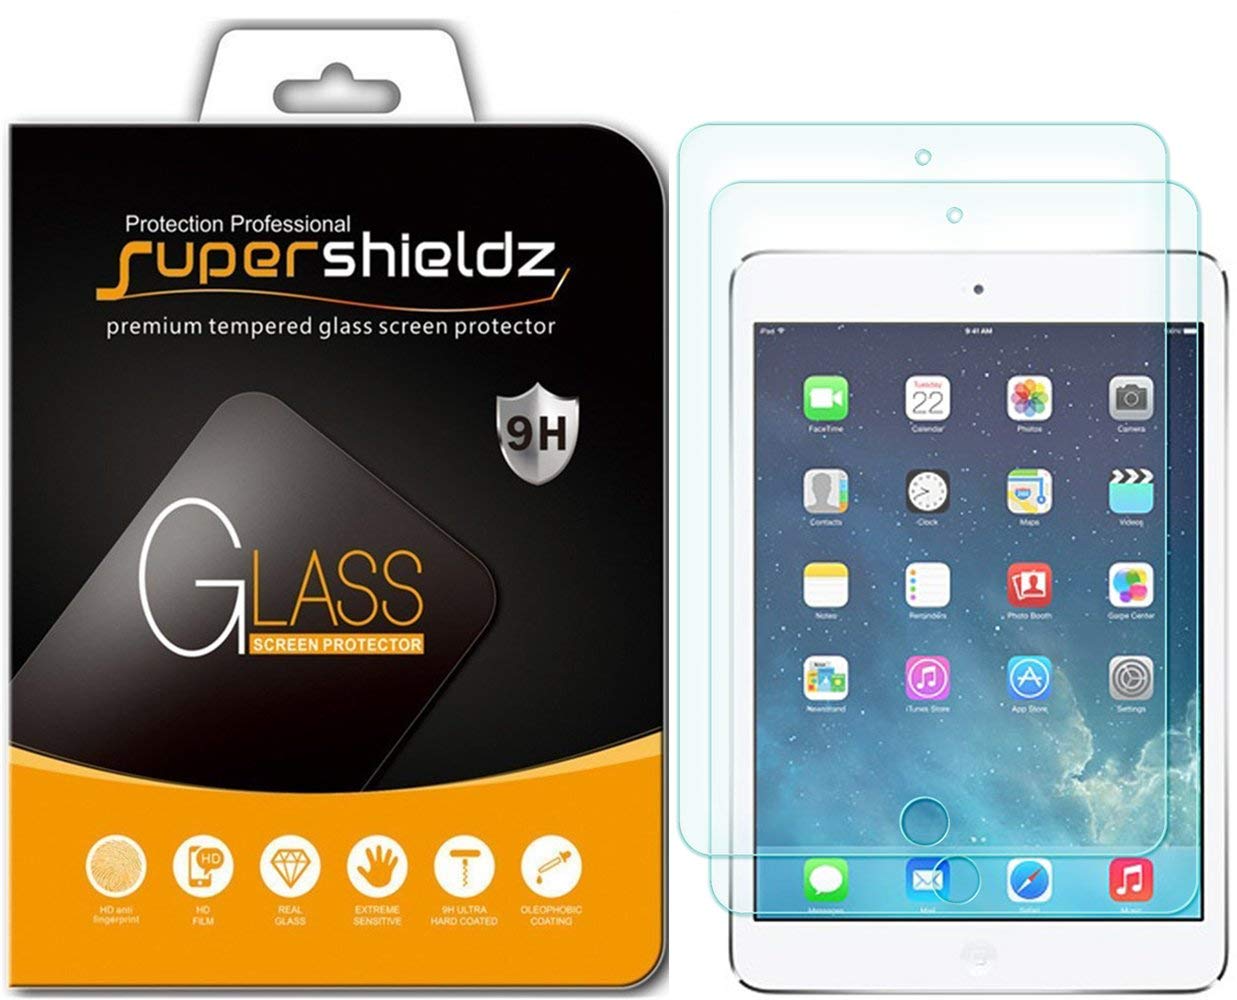 Super Shieldz iPad mini screen protectors